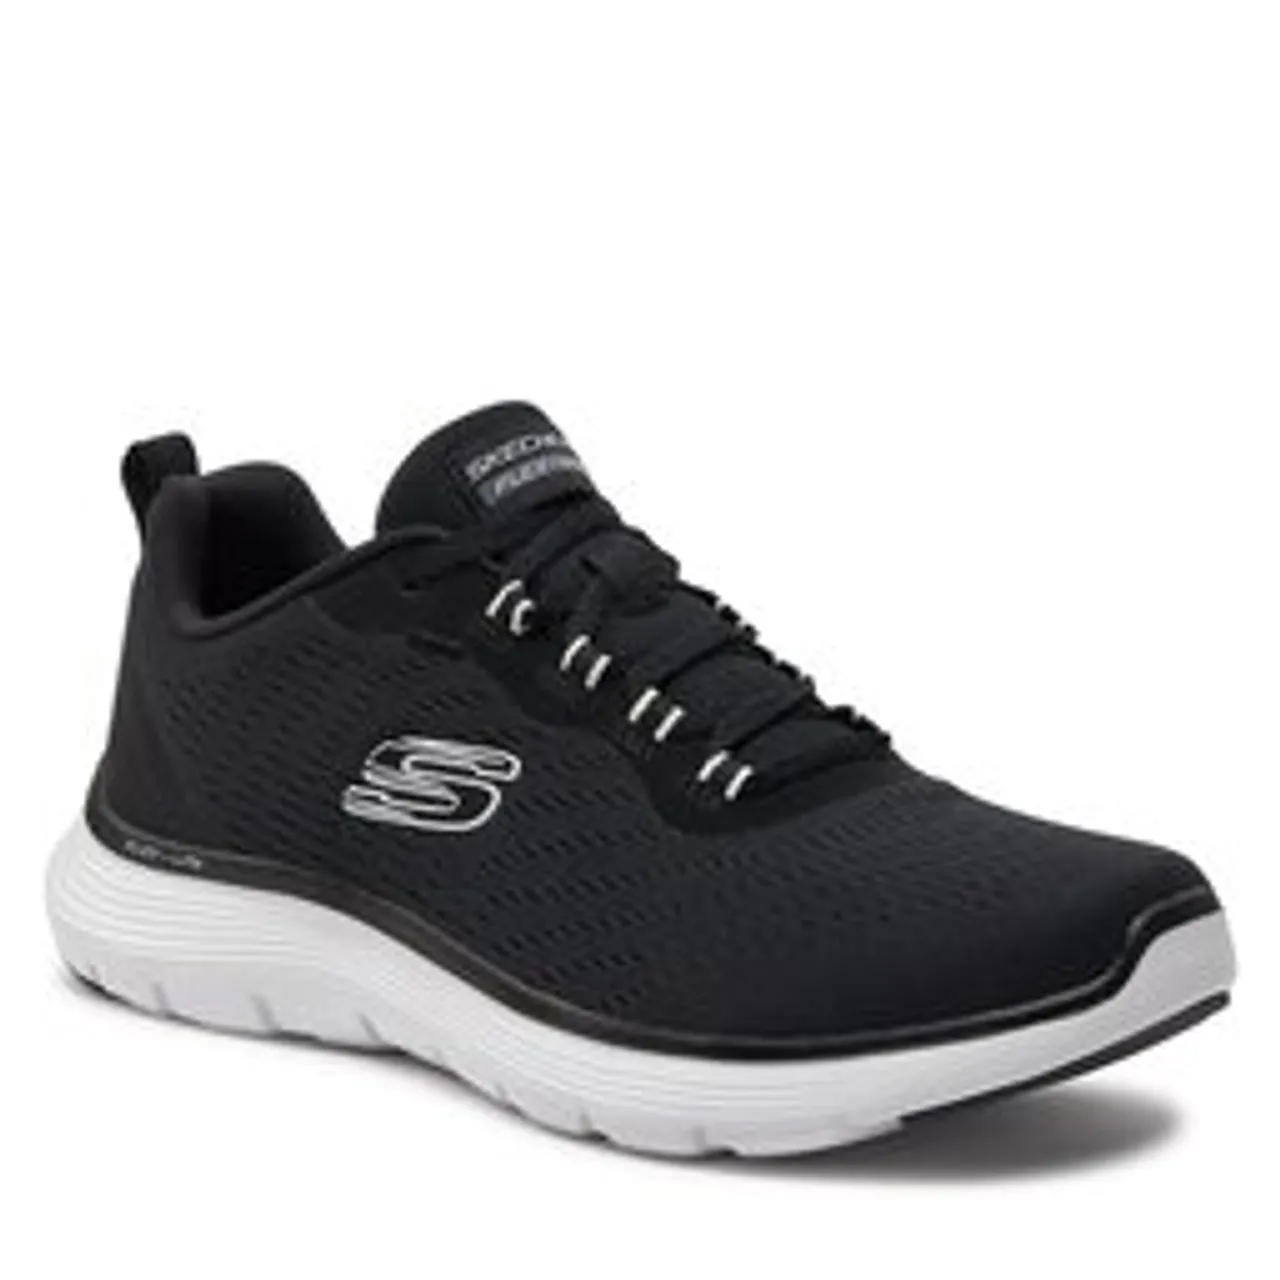 Sneakers Skechers Flex Appeal 5.0- 150201/BKW Black